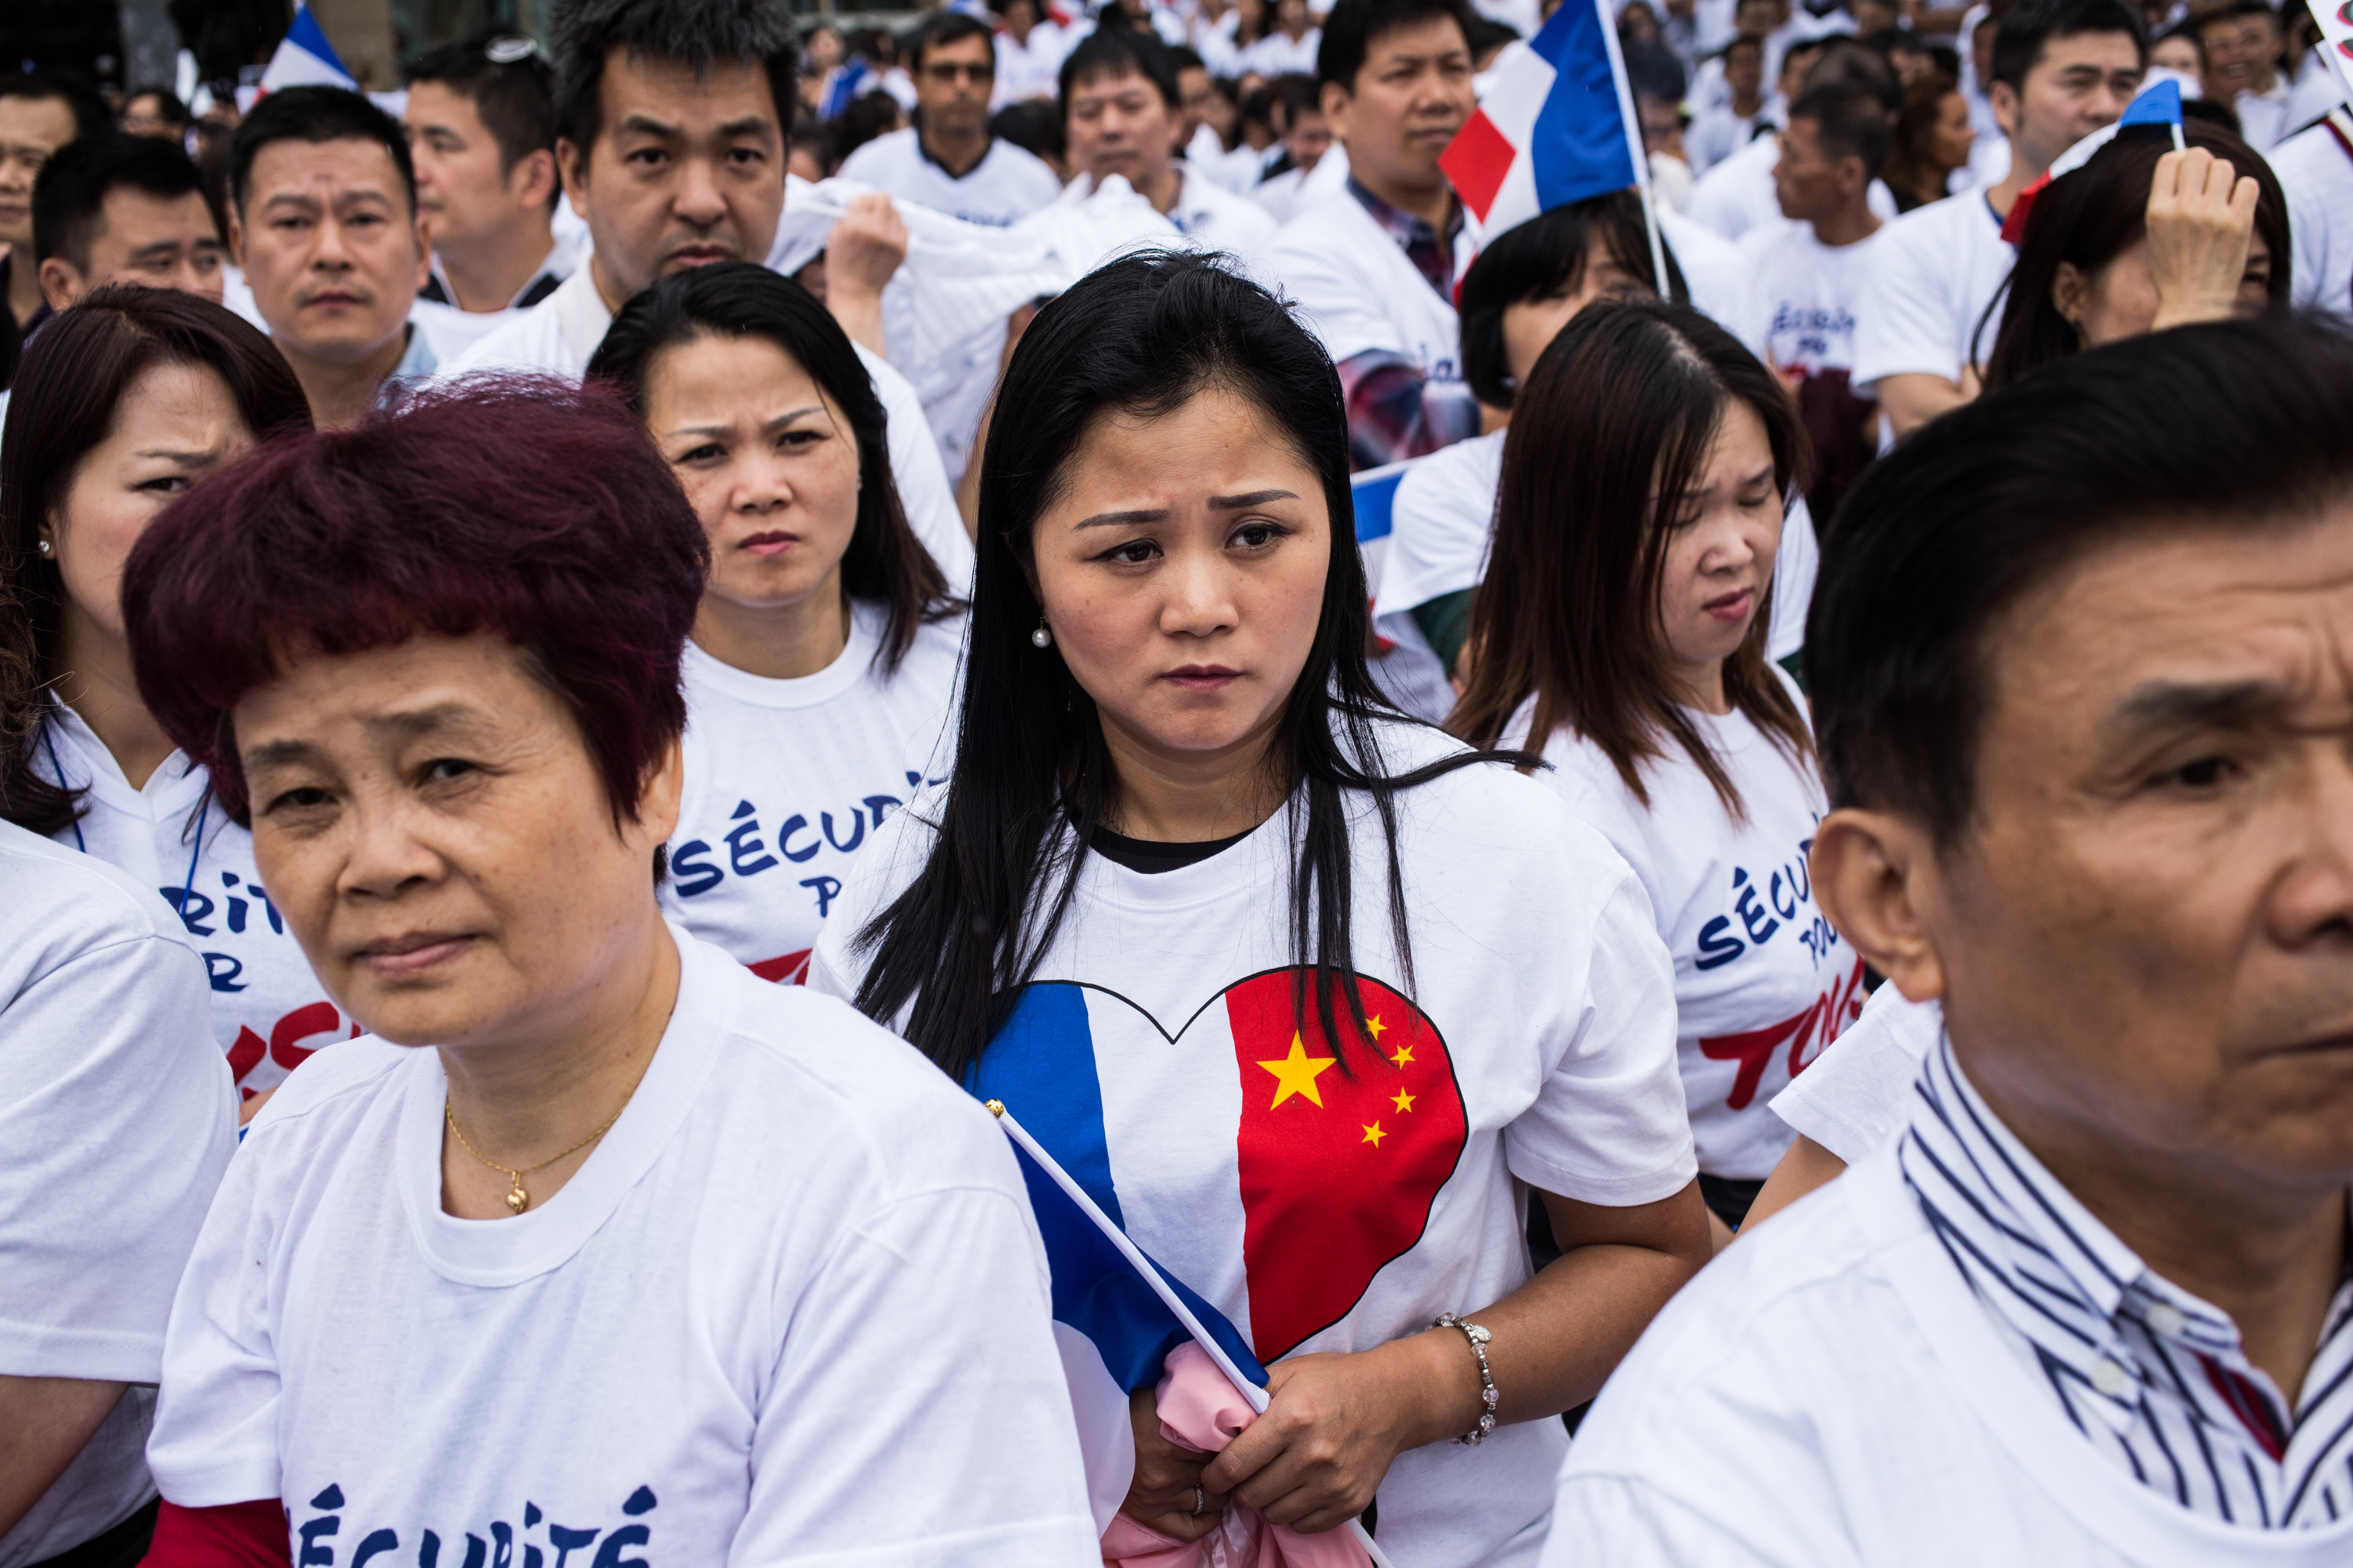 Manifestation "Sécurité pour tous" organisée par 60 associations des chinois de France, place de la République. La communauté chinoise dénonce le climat d'insécurité persistant qu'elle subie.